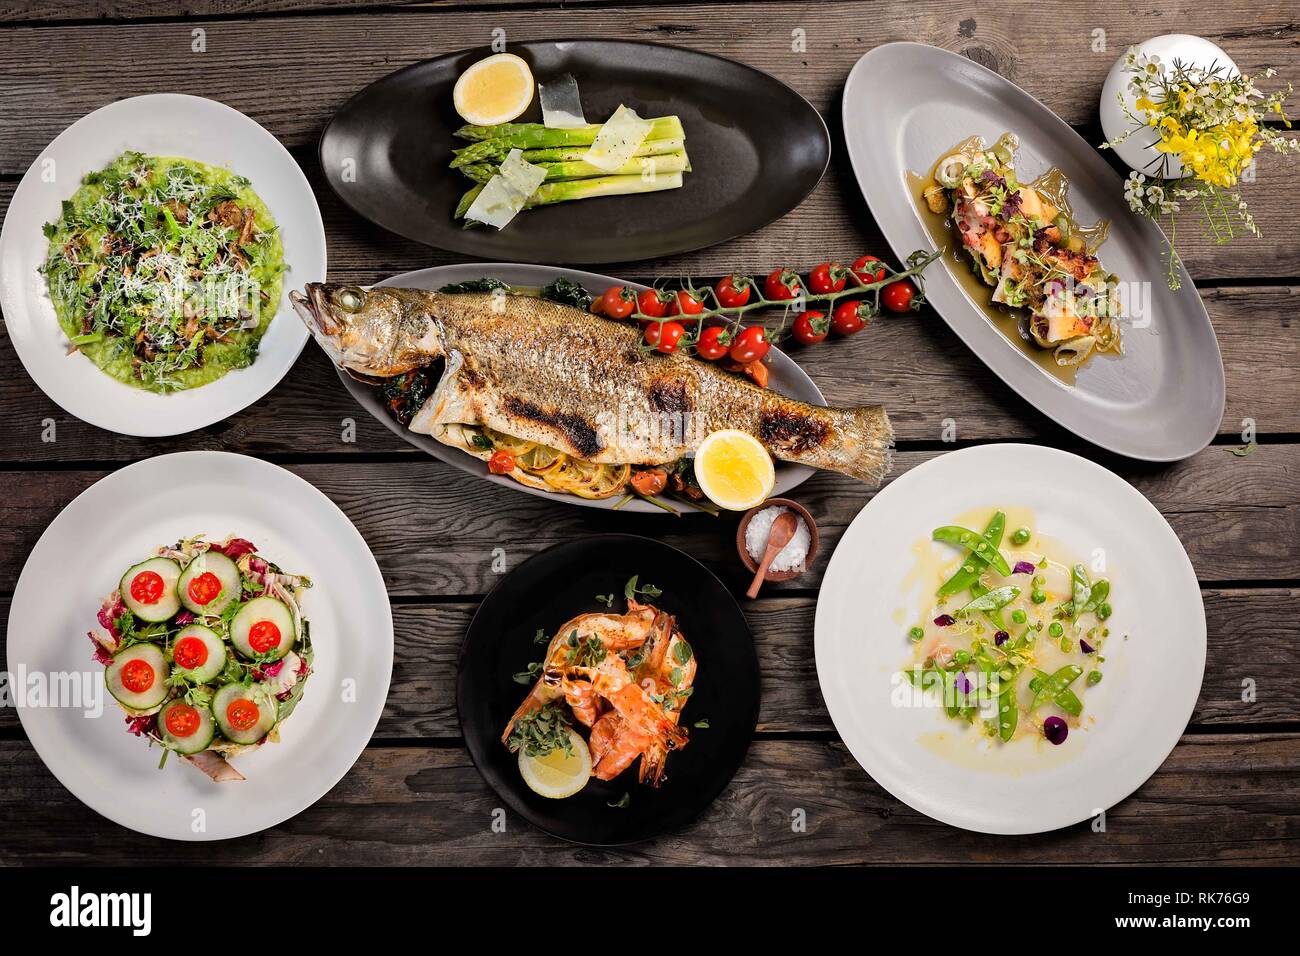 Vue de haut en bas d'une table de brunch avec une grande sélection de plats, poisson, crevettes, salades et légumes Banque D'Images